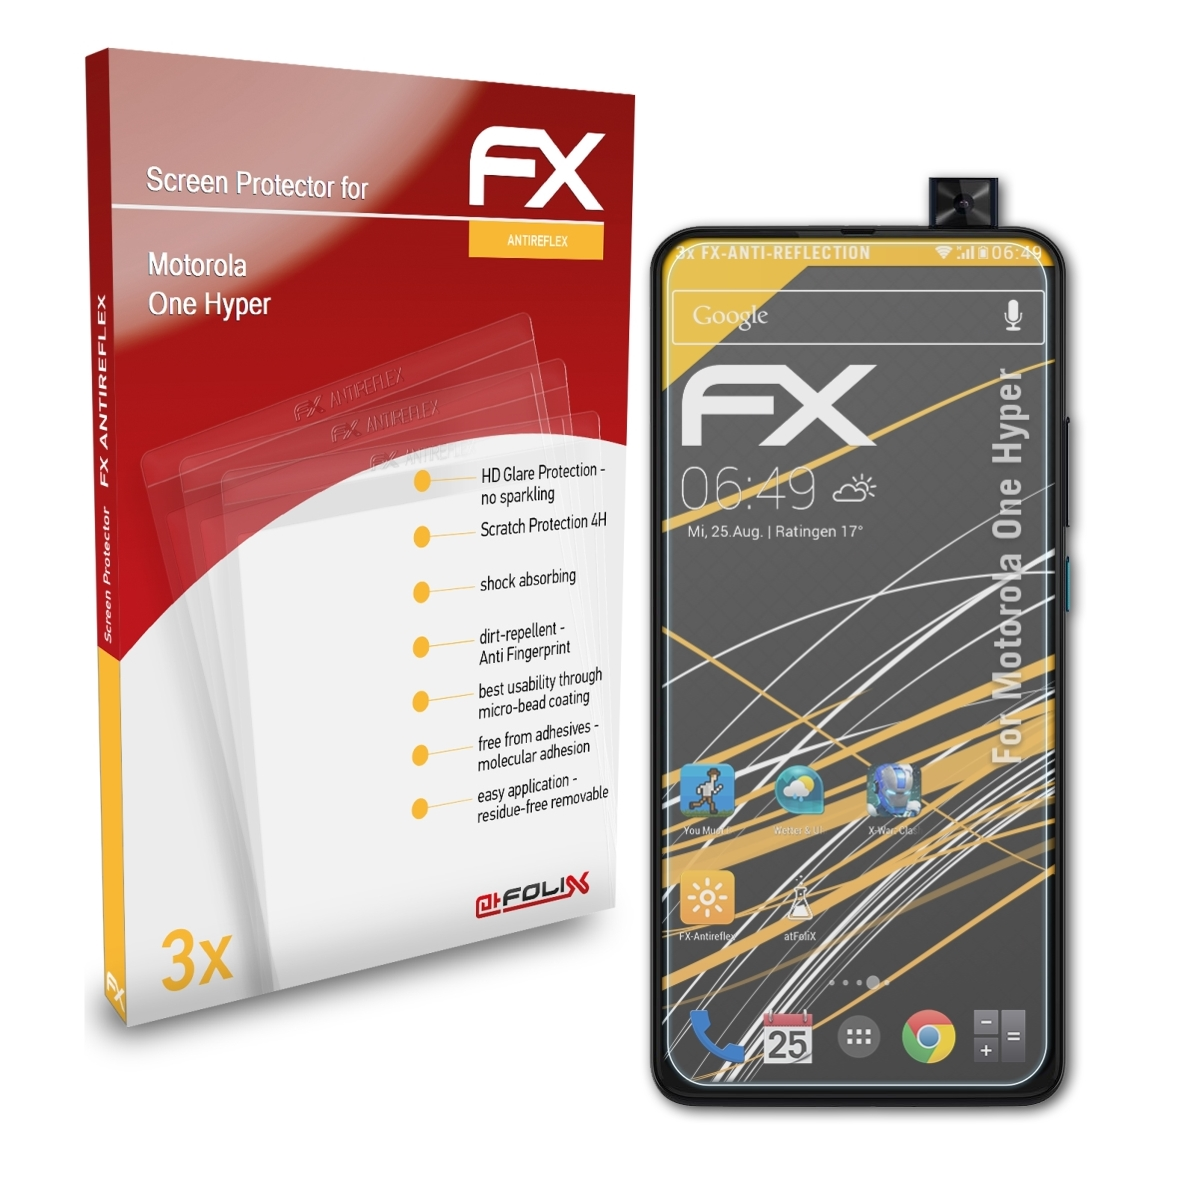 ATFOLIX 3x FX-Antireflex Motorola Displayschutz(für Hyper) One